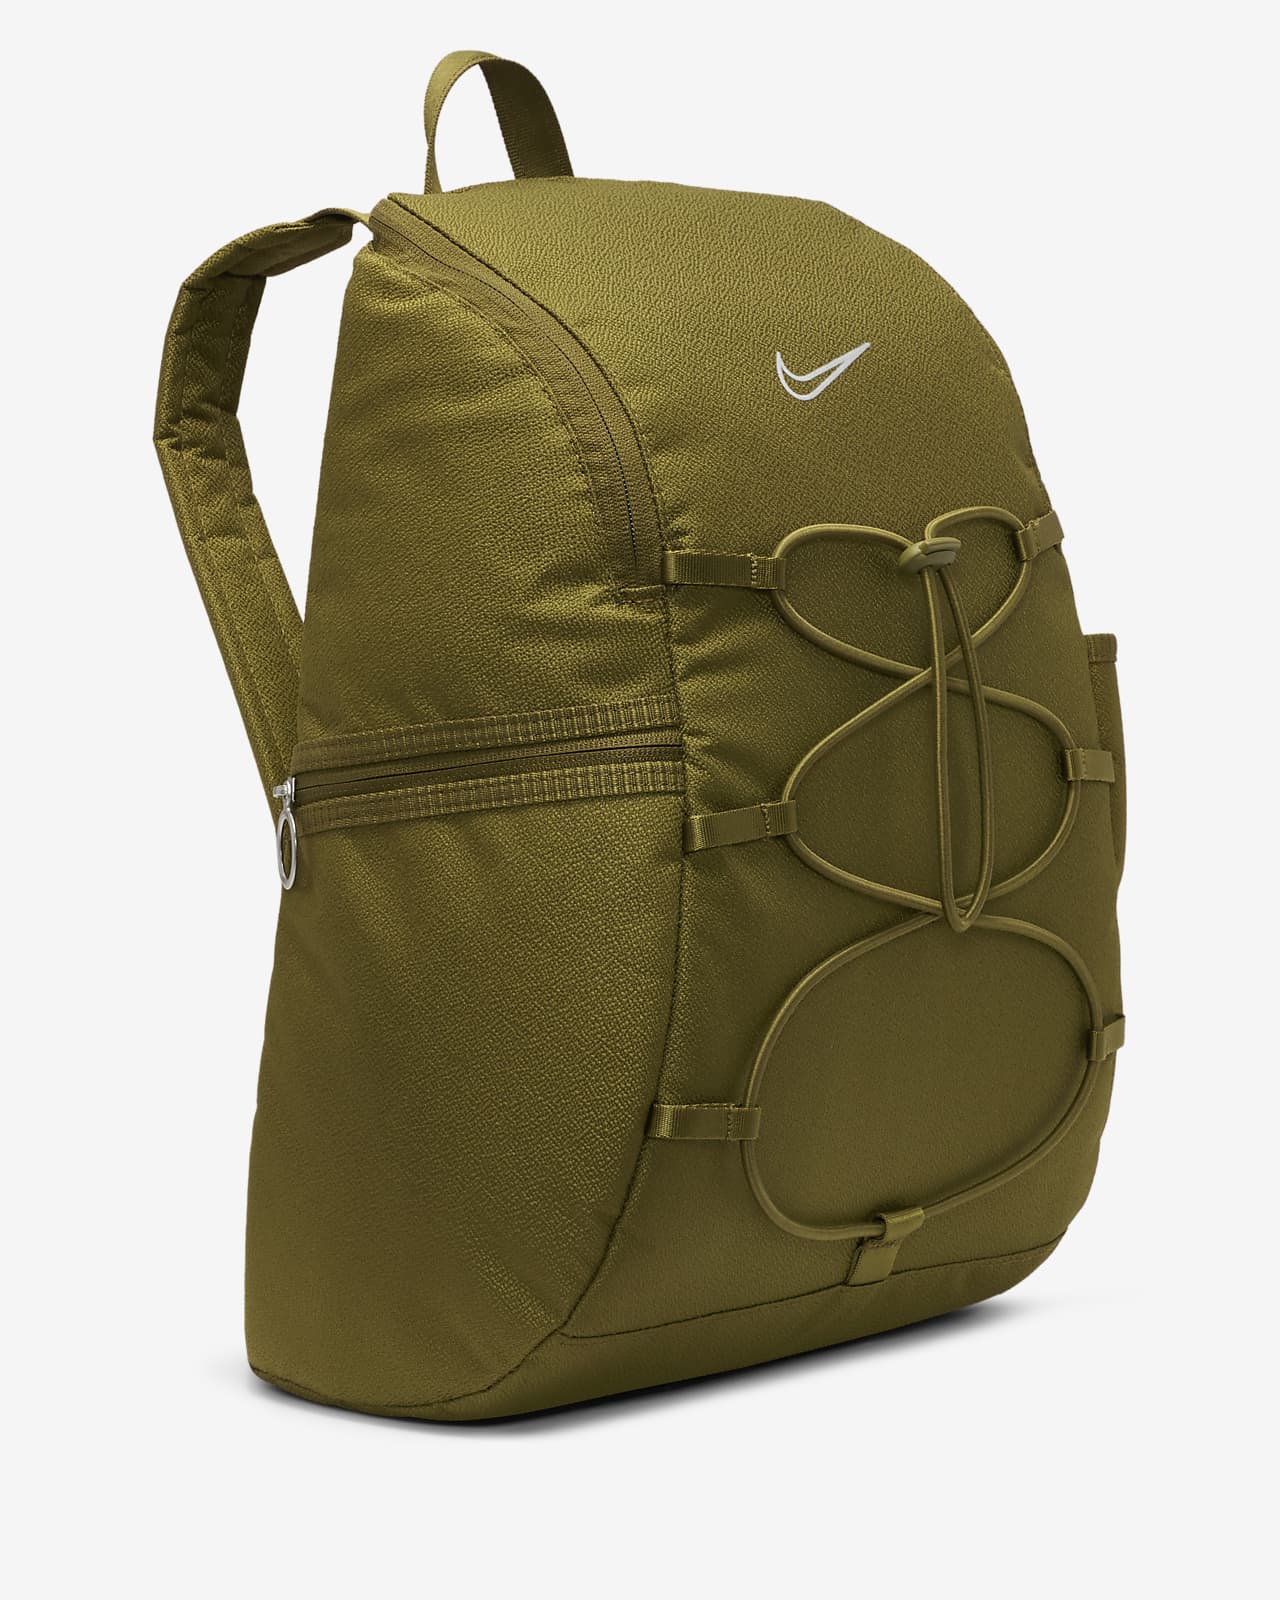 Women's backpack Nike One - Backpacks - Bags - Equipment